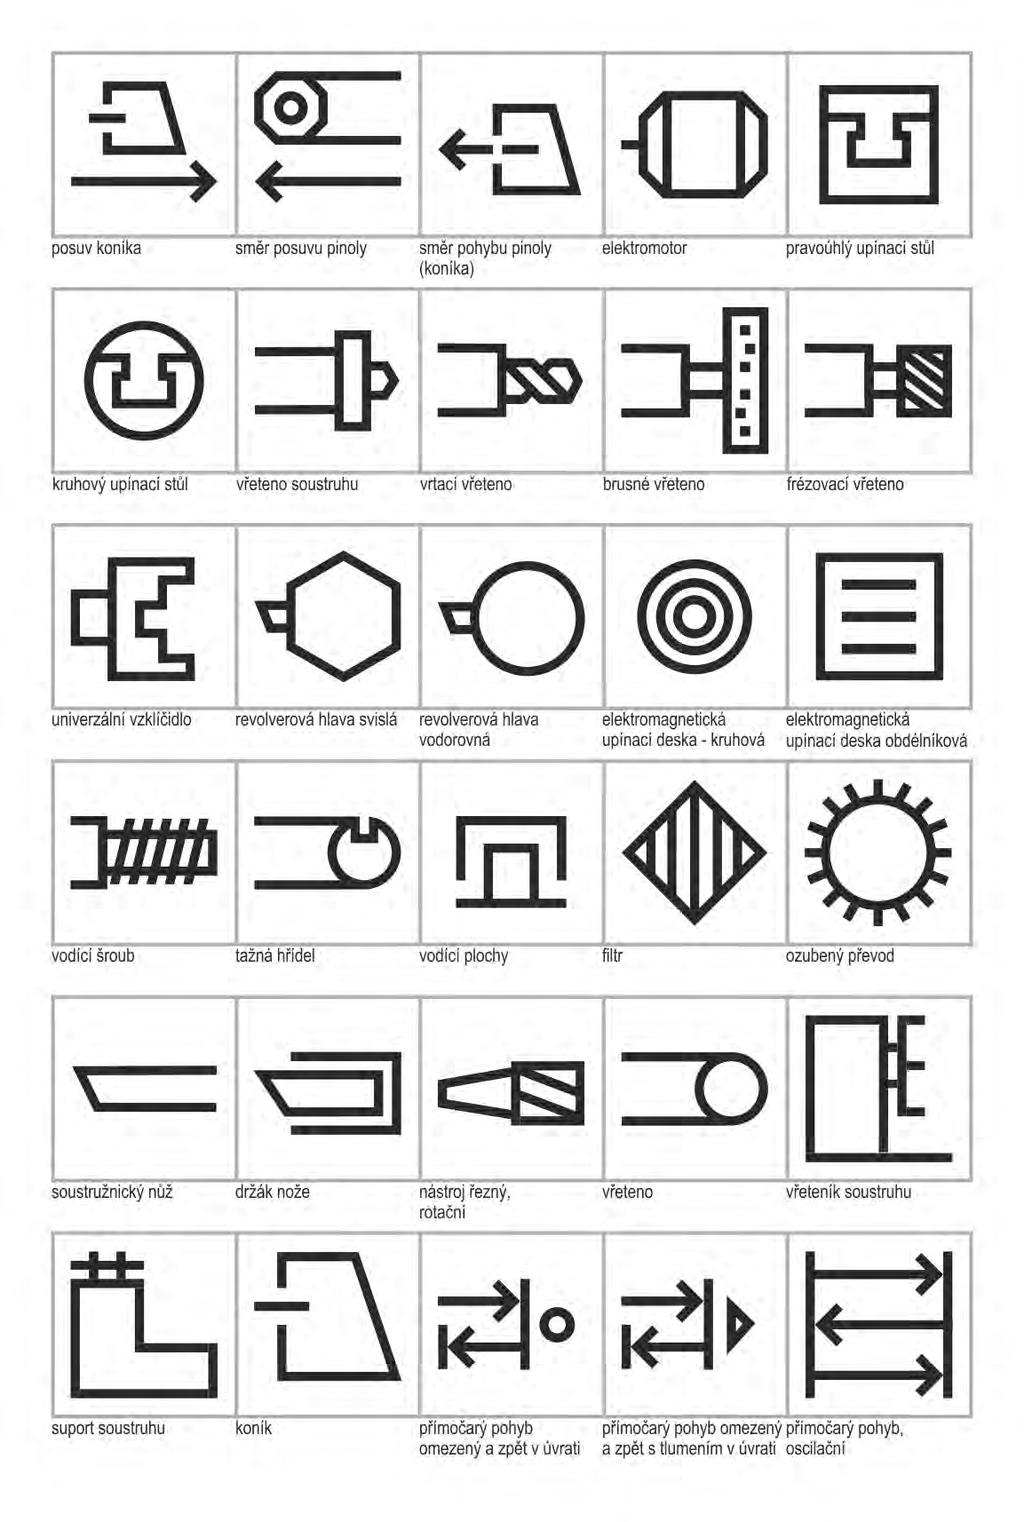 Výsledky dizertační práce Symboly a znaky 1979 Uvedeny jako grafická úprava a rozšíření symbolů